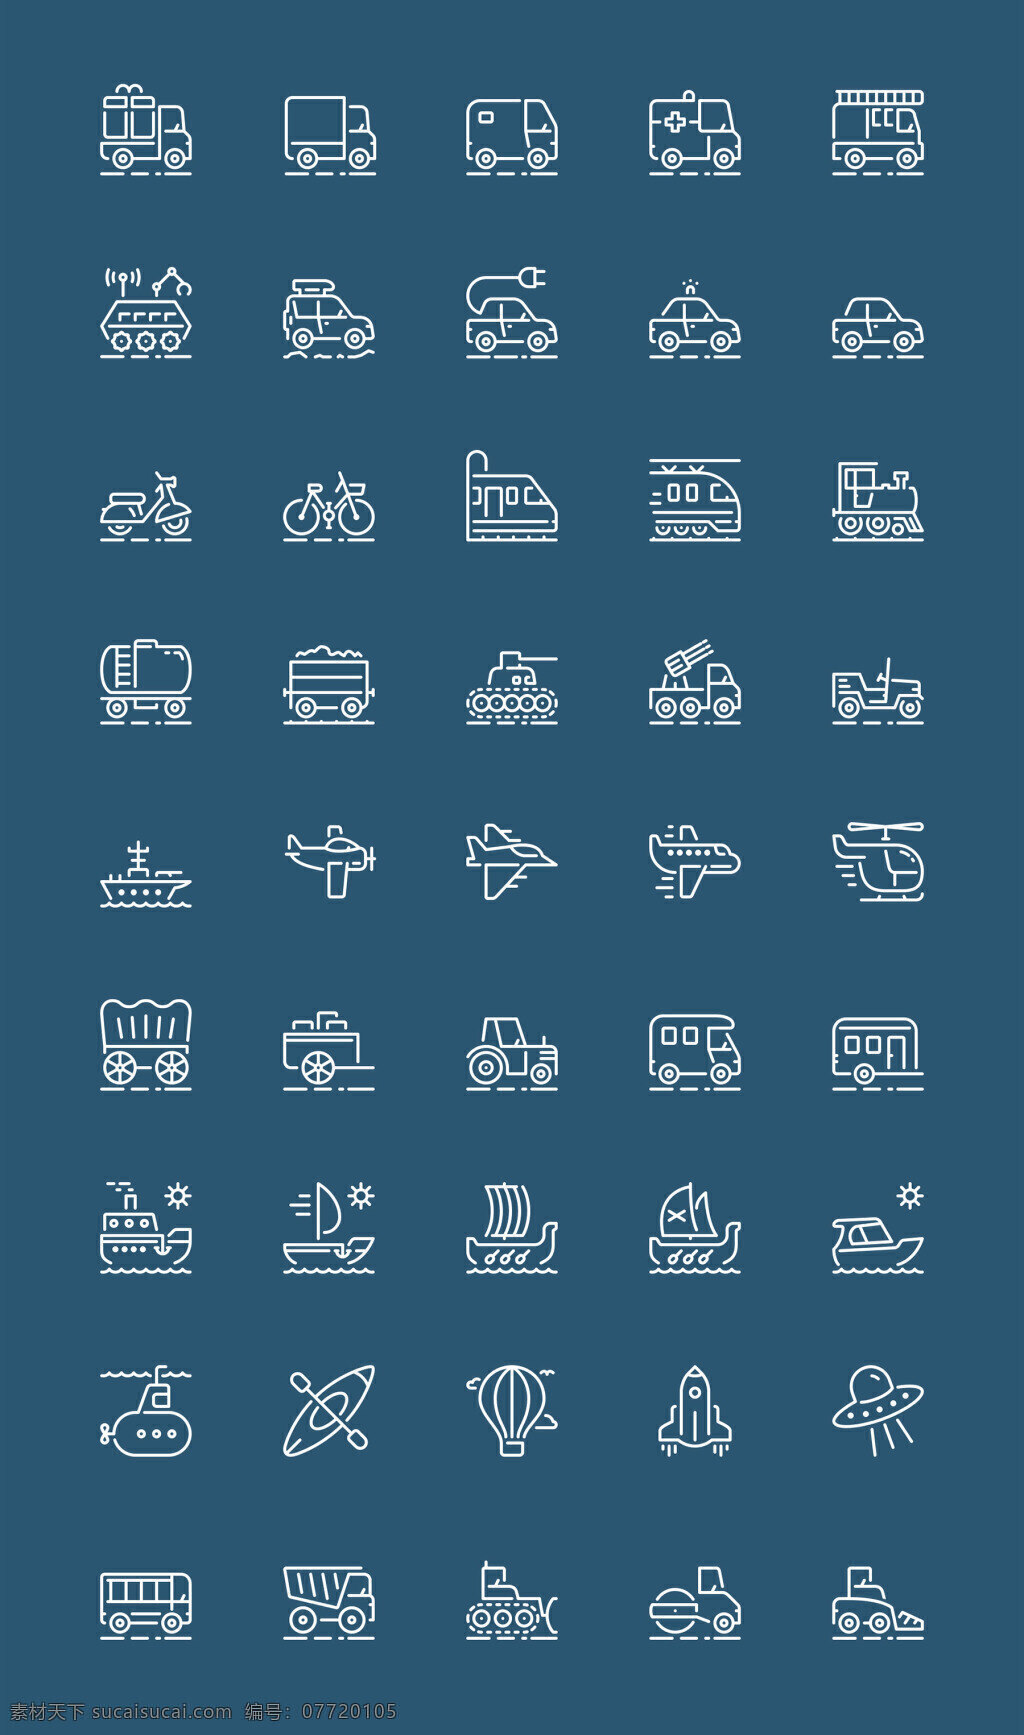 枚 运输工具 图标 创意图标 图标下载 图标设计 表情图标 迷你图标 通用图标 网页图标 icon 飞机 汽车 轮船